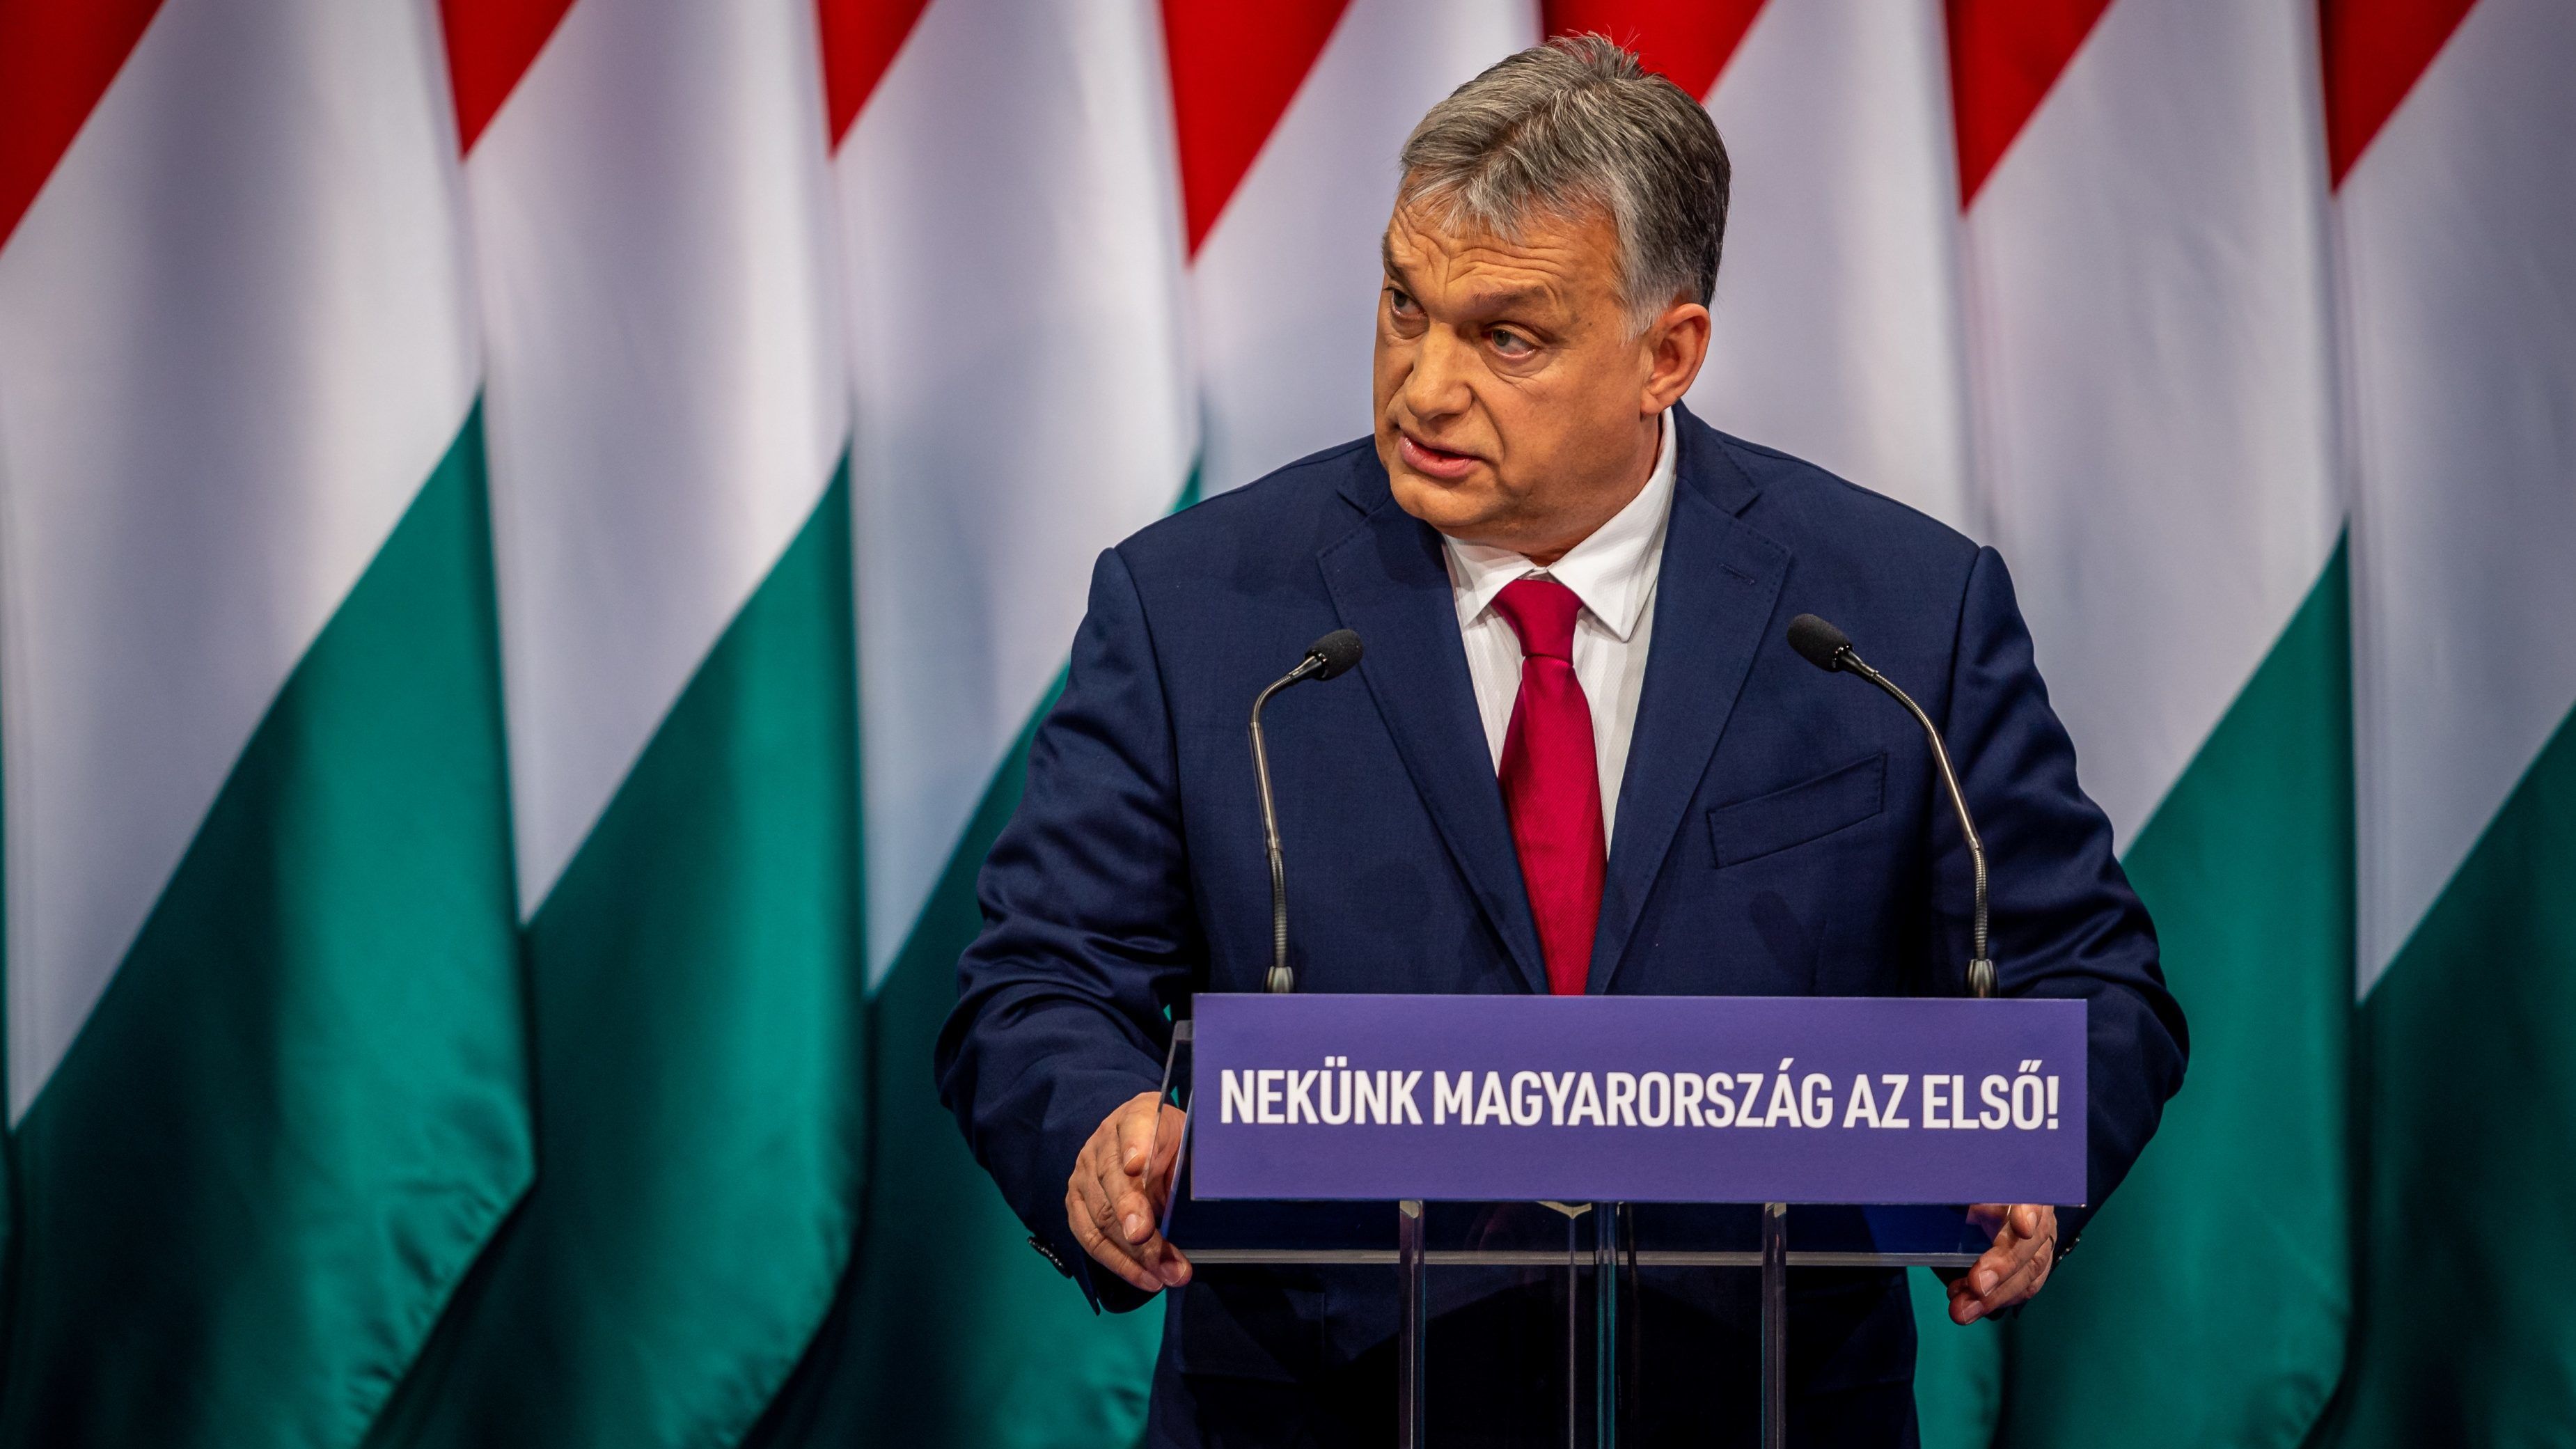 Márciustól 50 forinttal kevesebbet keres Orbán Viktor